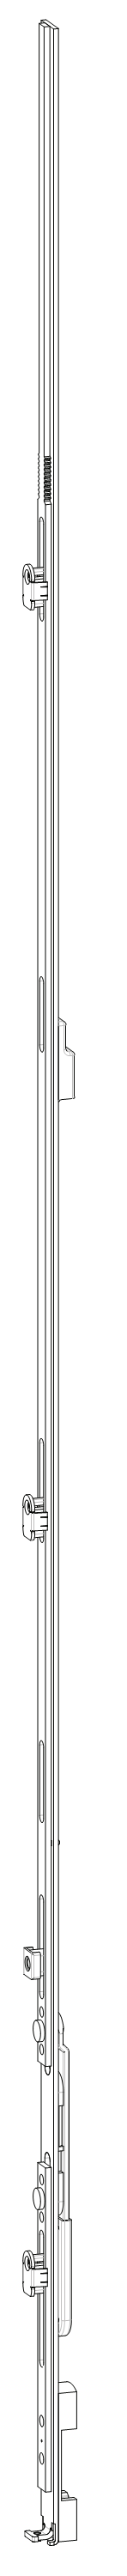 GU-ITALIA -  Catenaccio UNI-JET asta a leva altezza maniglia fissa per seconda anta - gr / dim. 1440 - alt. man. LEVA ZH - lbb/hbb 1351 - 1600